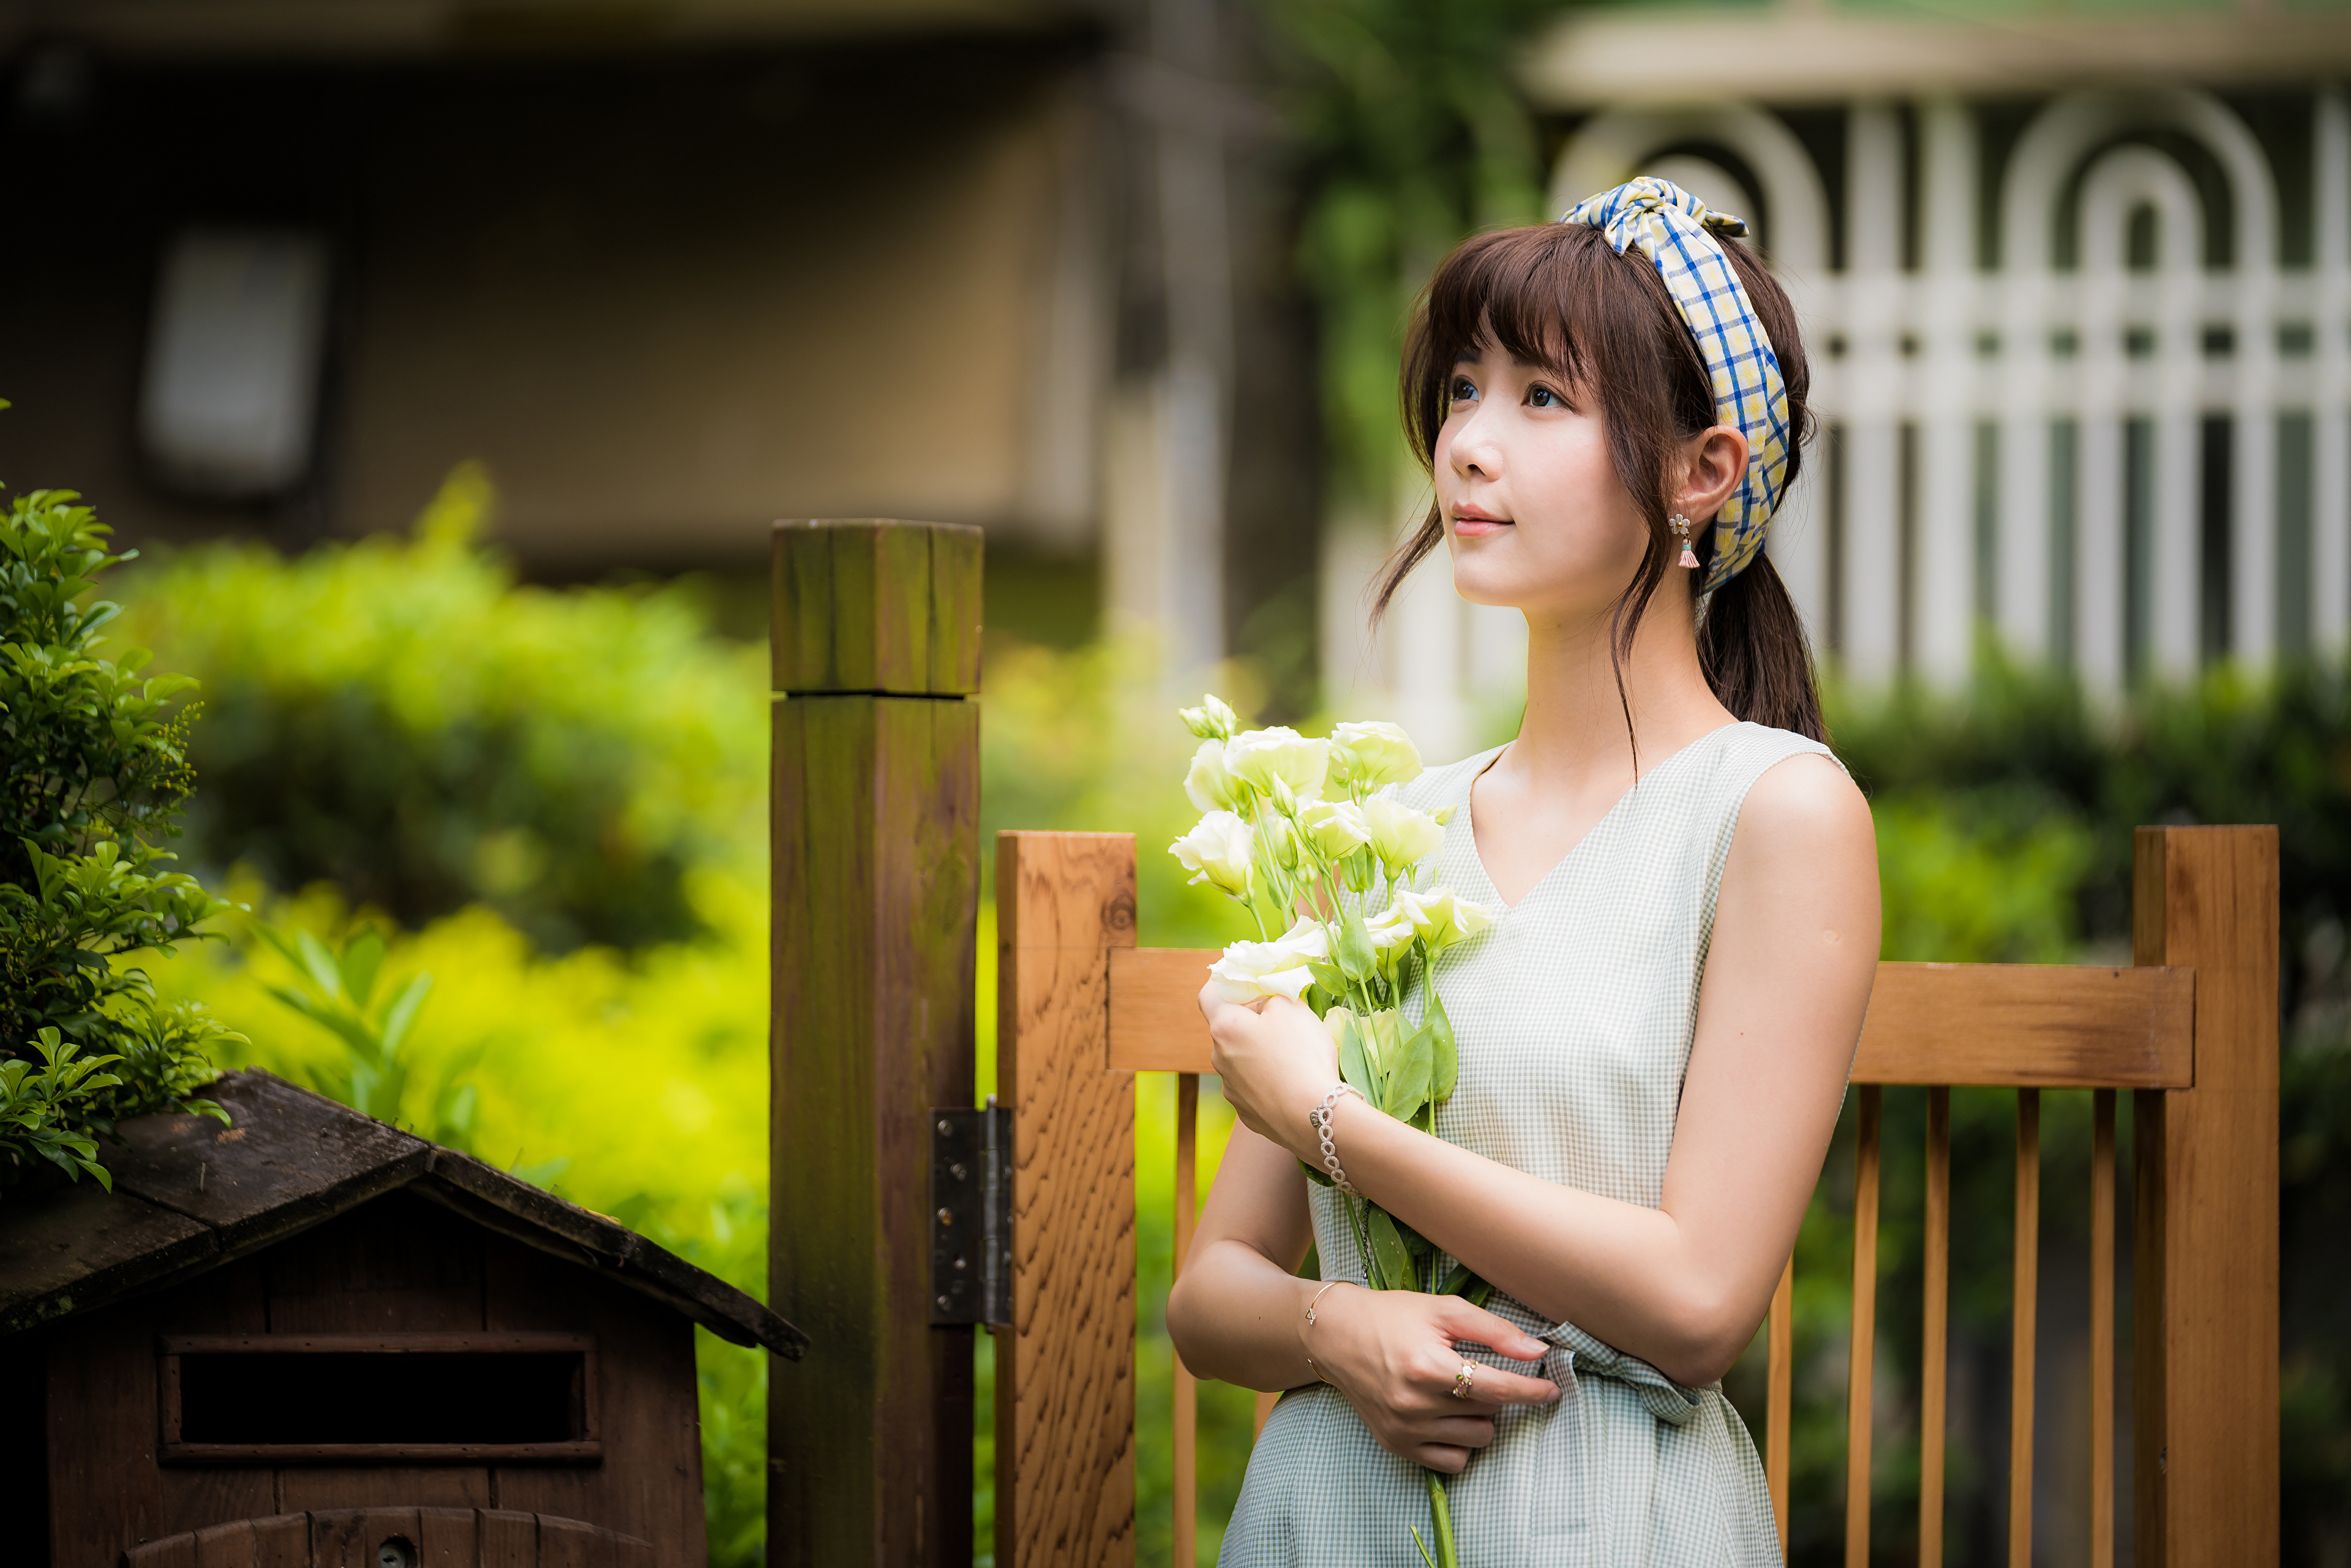 Asian Model Women Long Hair Brunette Hair Band Dress Bushes Grass Fence Flowers Bracelets Earring 3840x2561